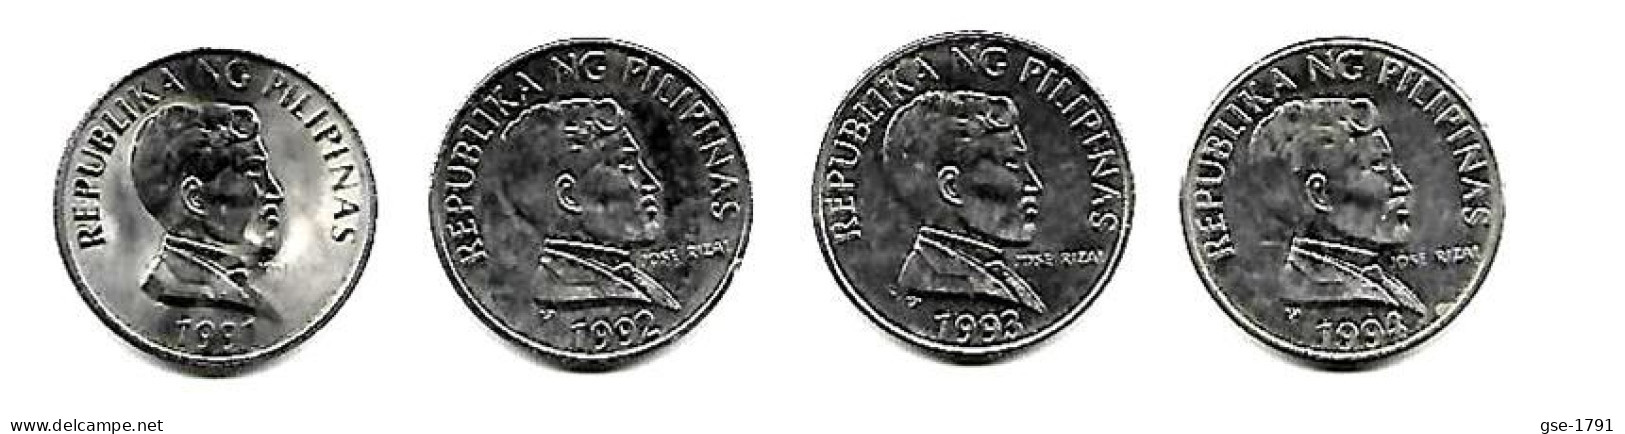 PHILIPPINES  Réforme Coinage, 1 Peso  José RIZAL Petit  BULL   KM 243.2  Série Complète De 4 Monnaies - Philippines